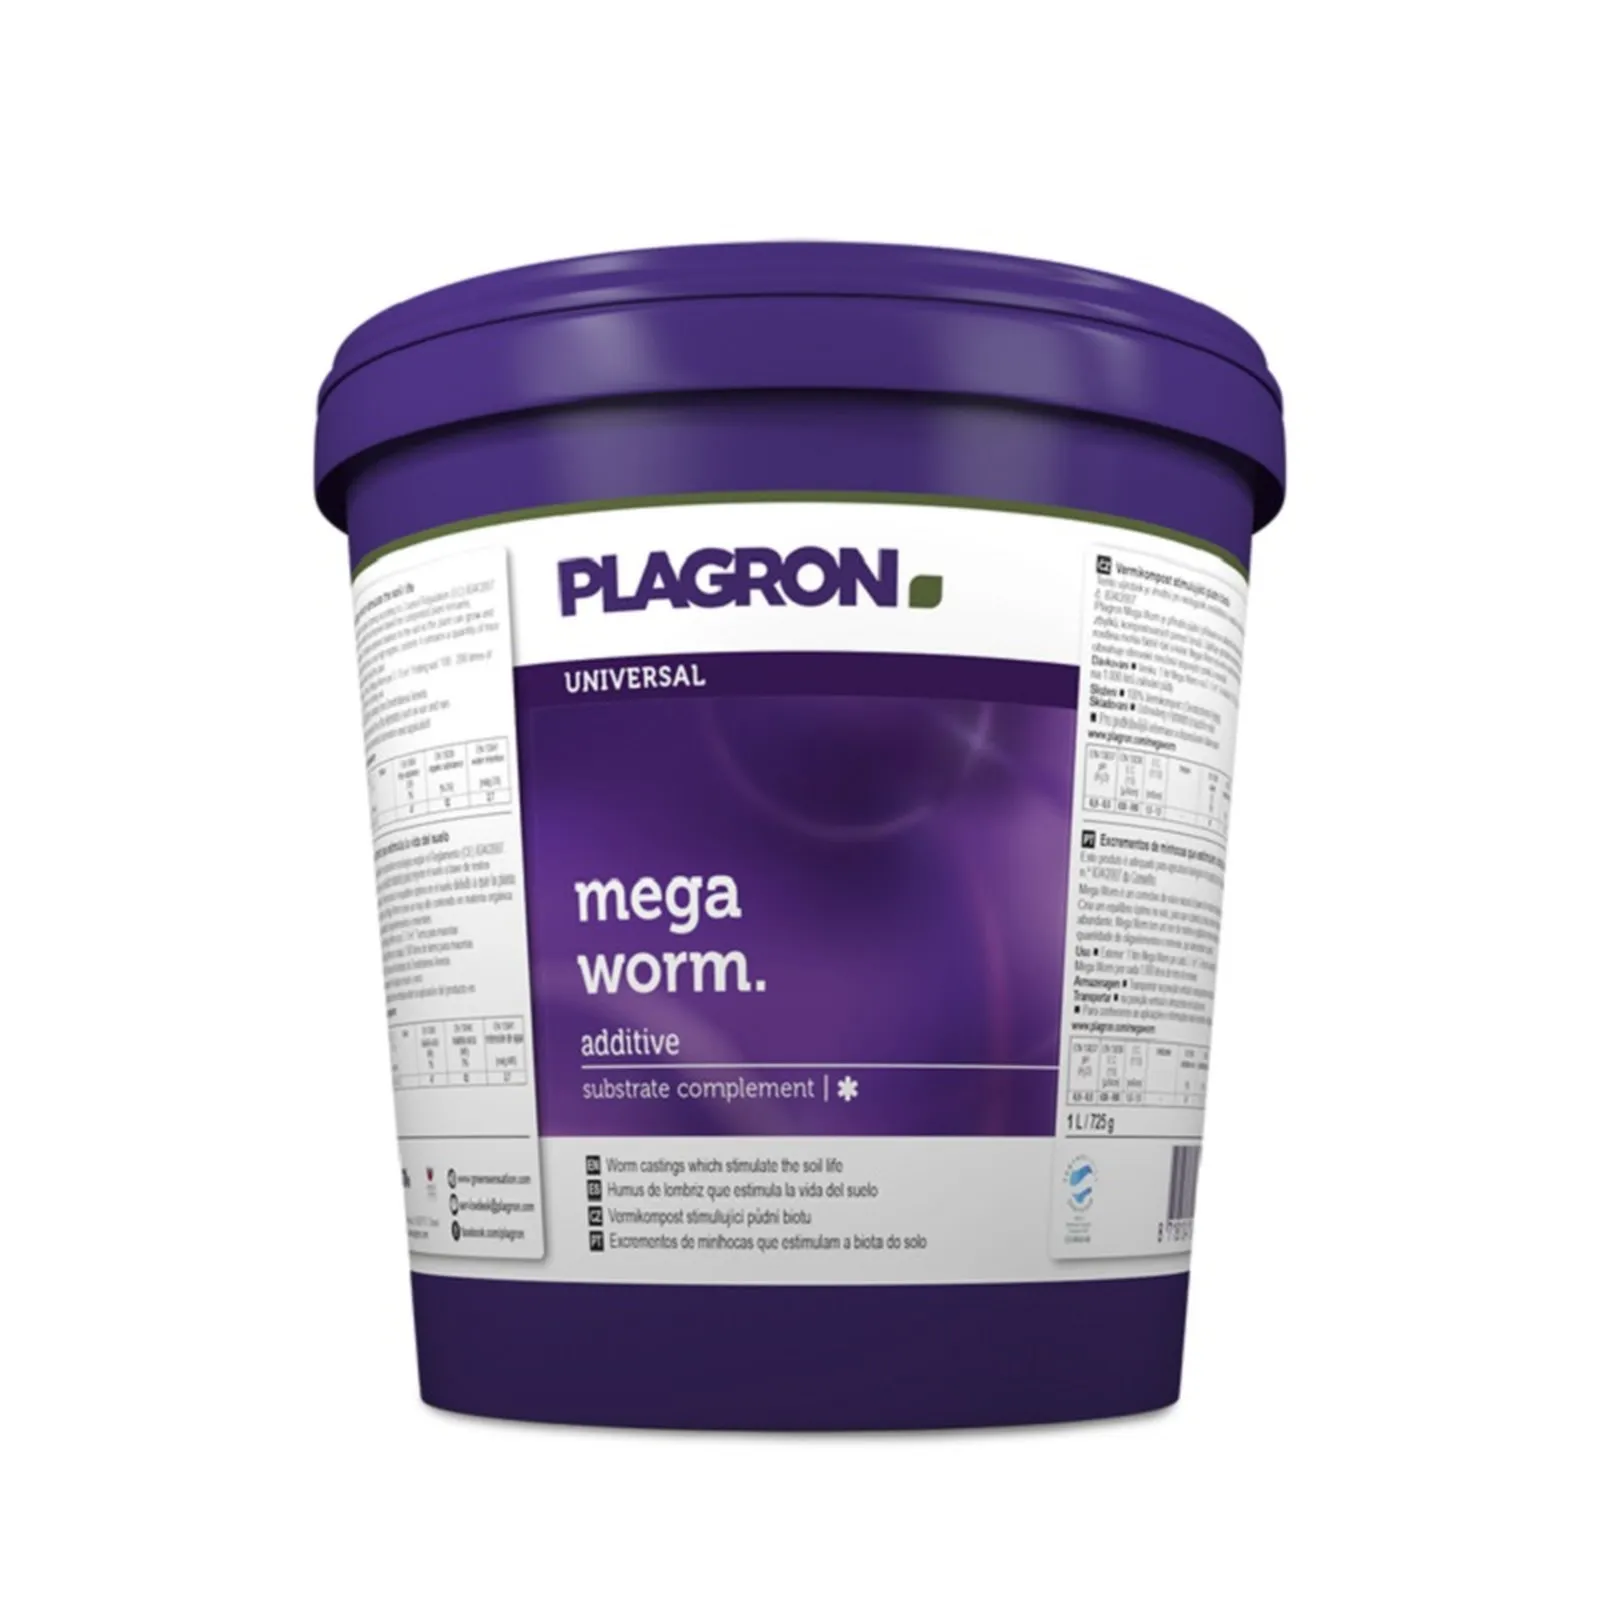 Plagron Mega Worm от магазина GrowMix